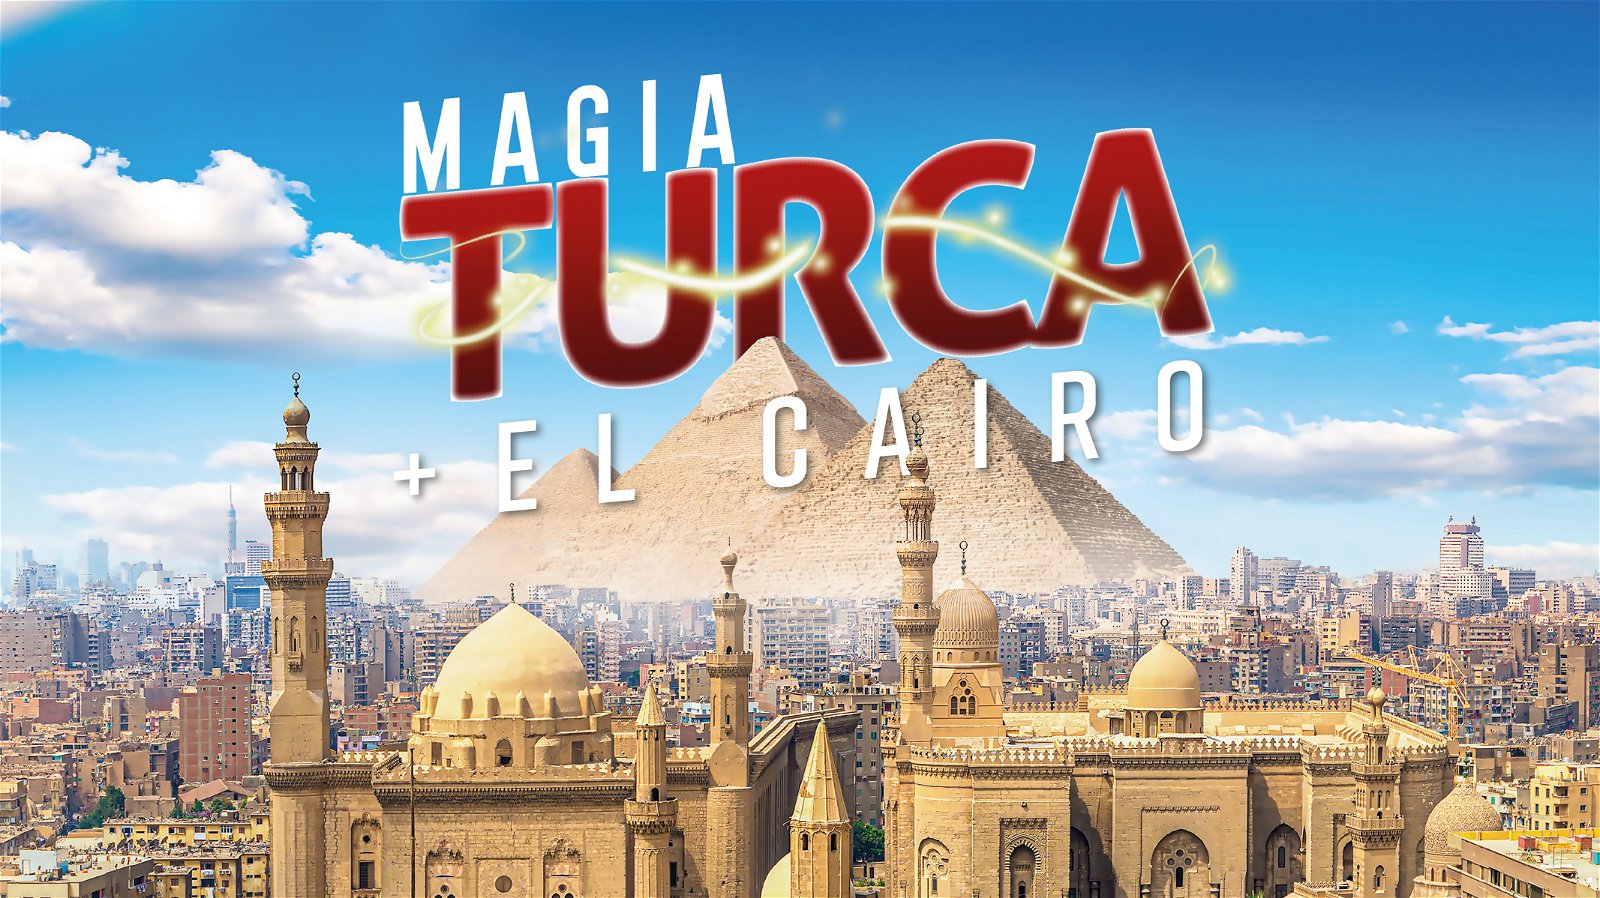 Magia Turca Plus El Cairo